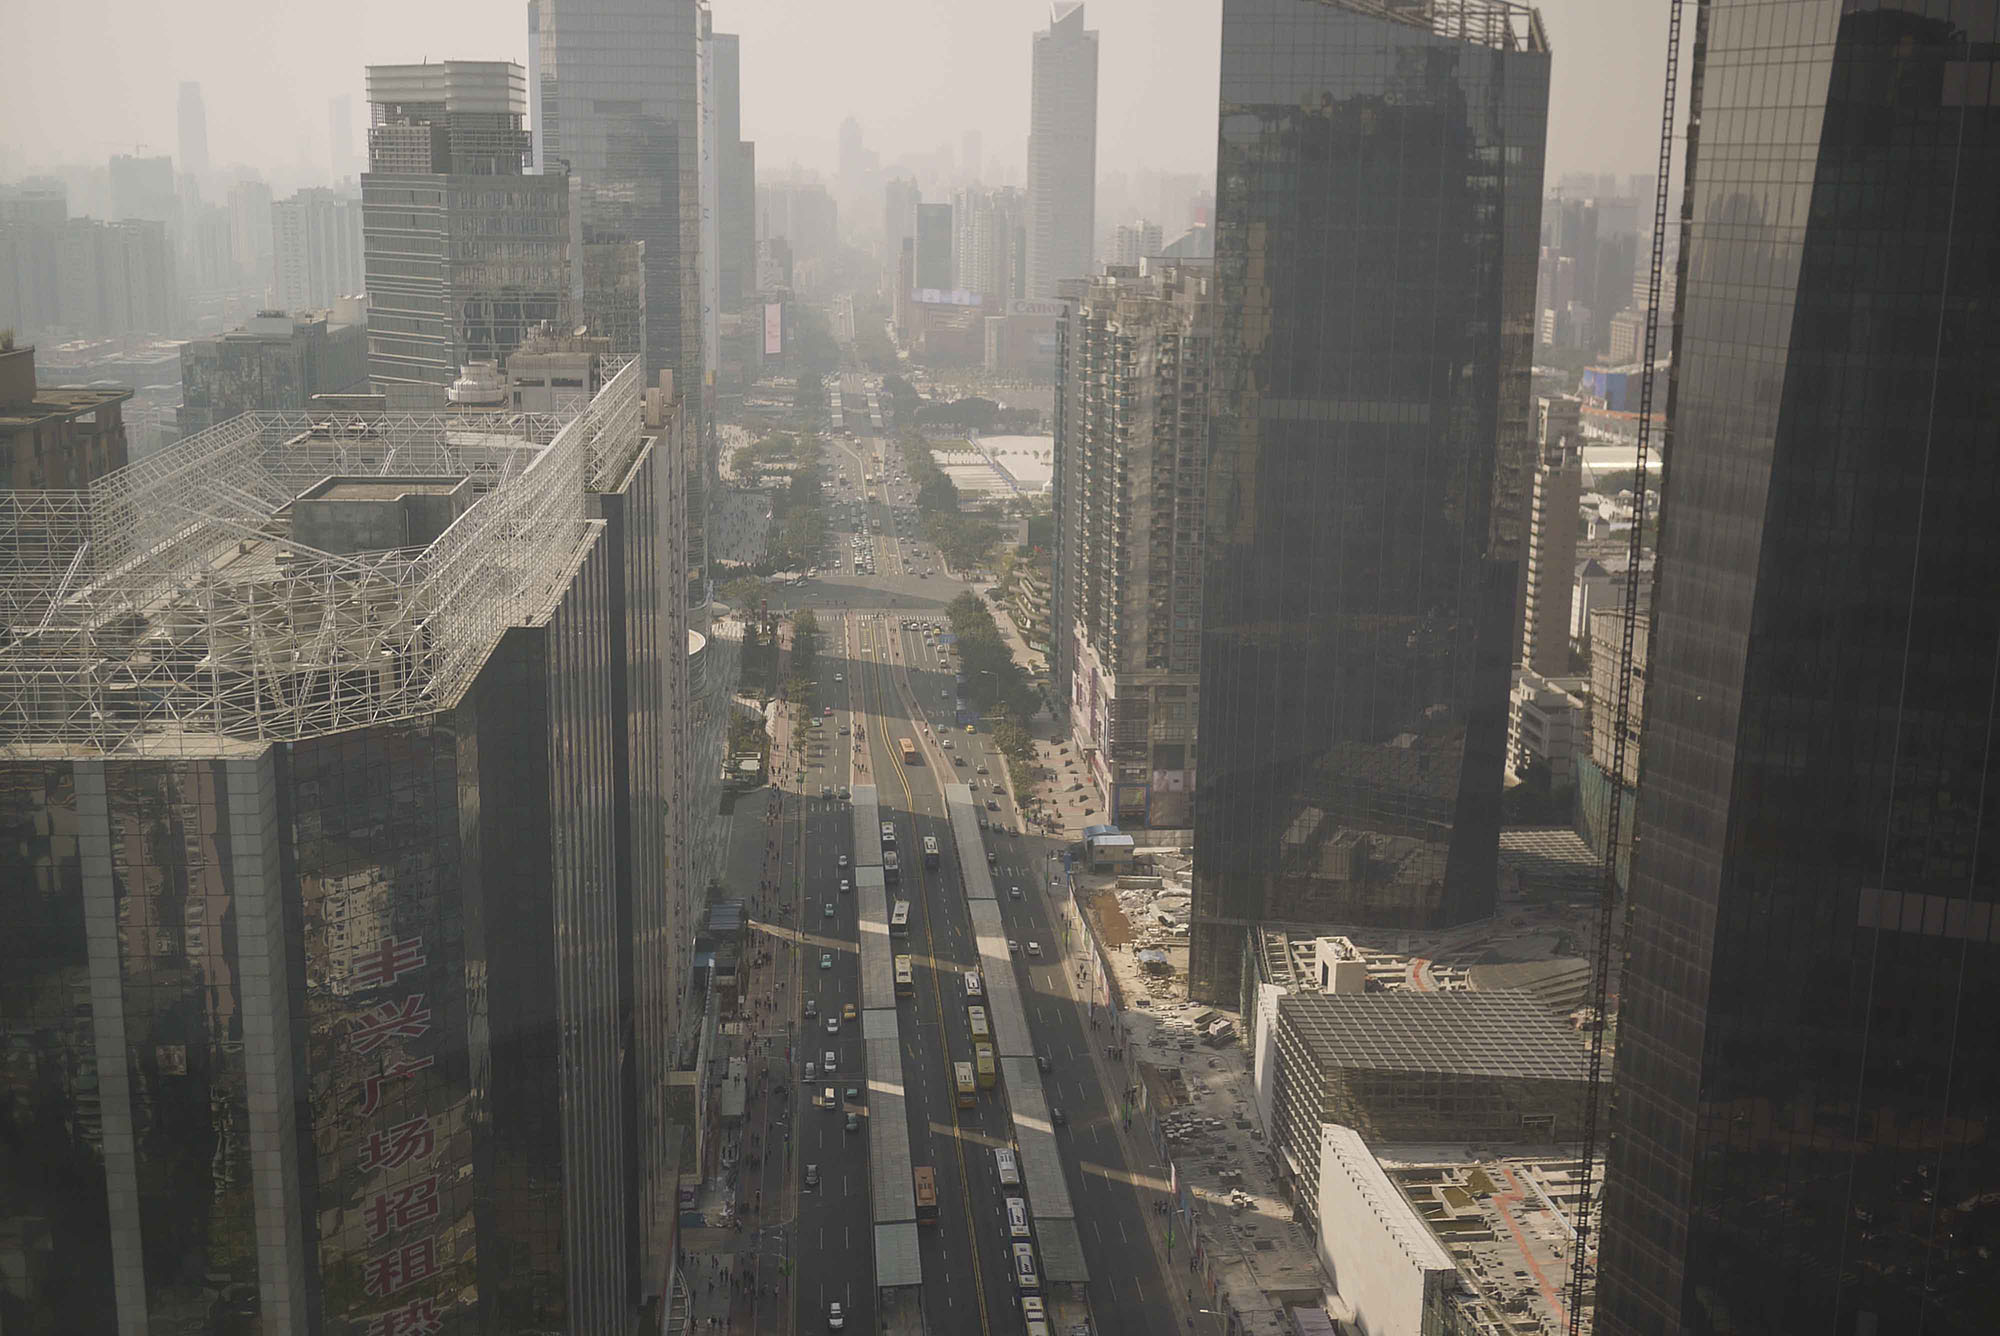 Fig. 2.21 BRT corridor in Guangzhou, China.